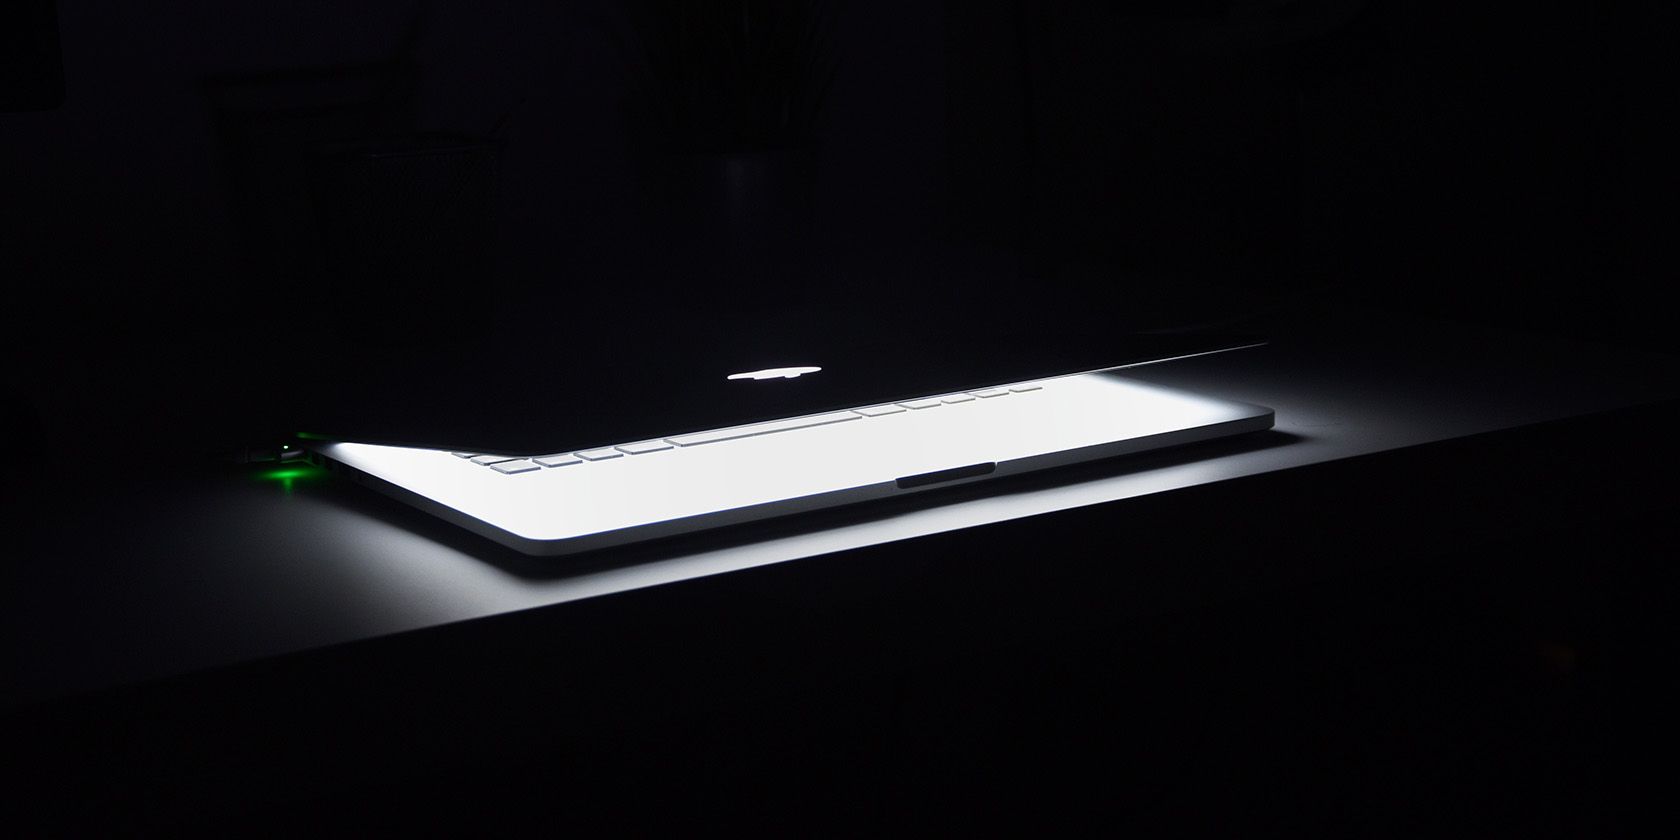 MacBook opening from sleep in a dark room